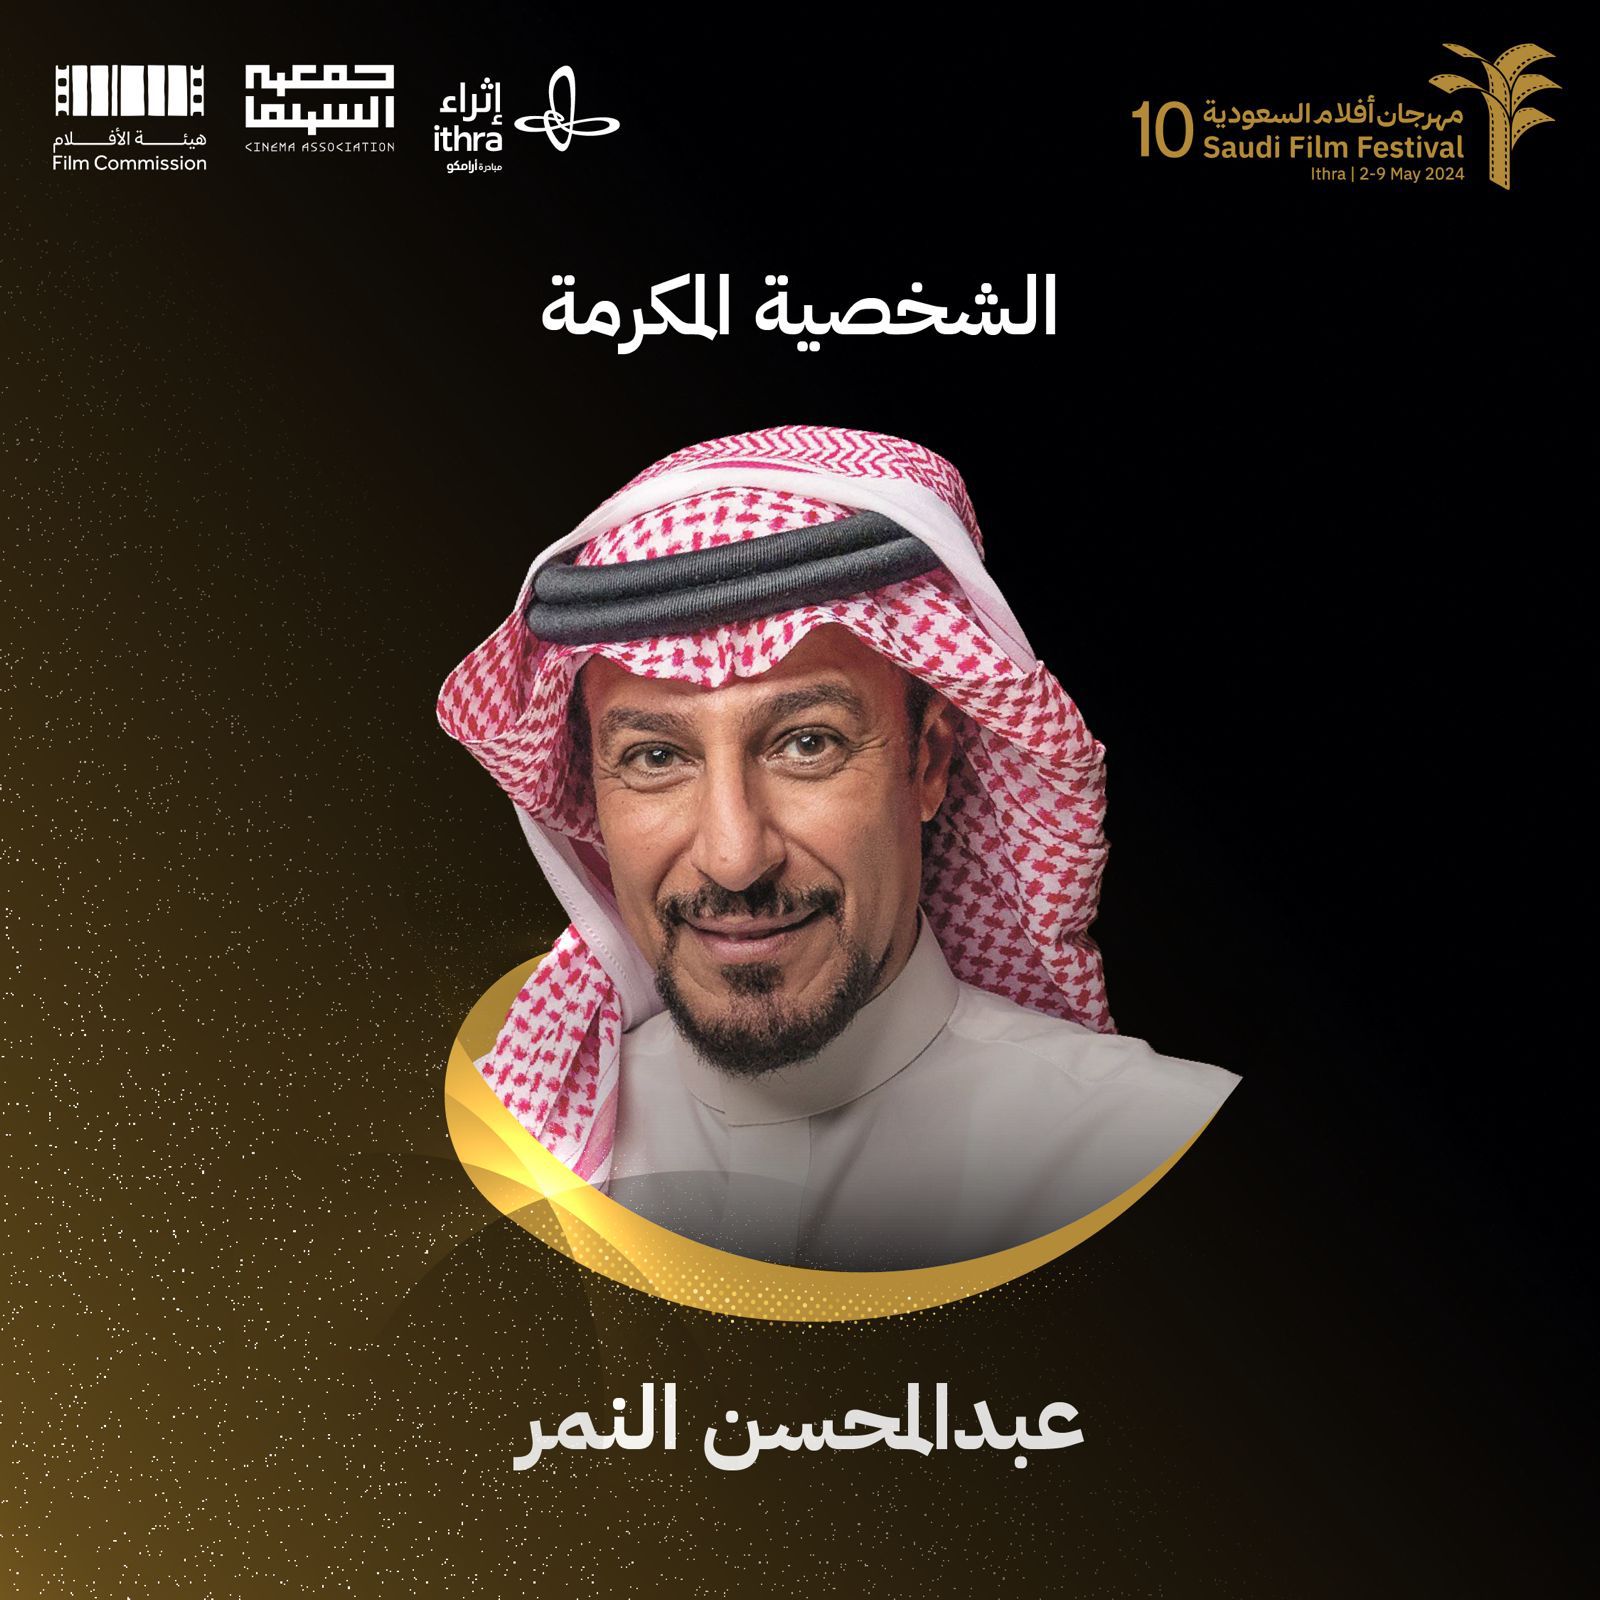 في دورته العاشرة التي تنطلق مايو المقبل..مهرجان "أفلام السعودية" يحتفي بالفنان عبدالمحسن النمر